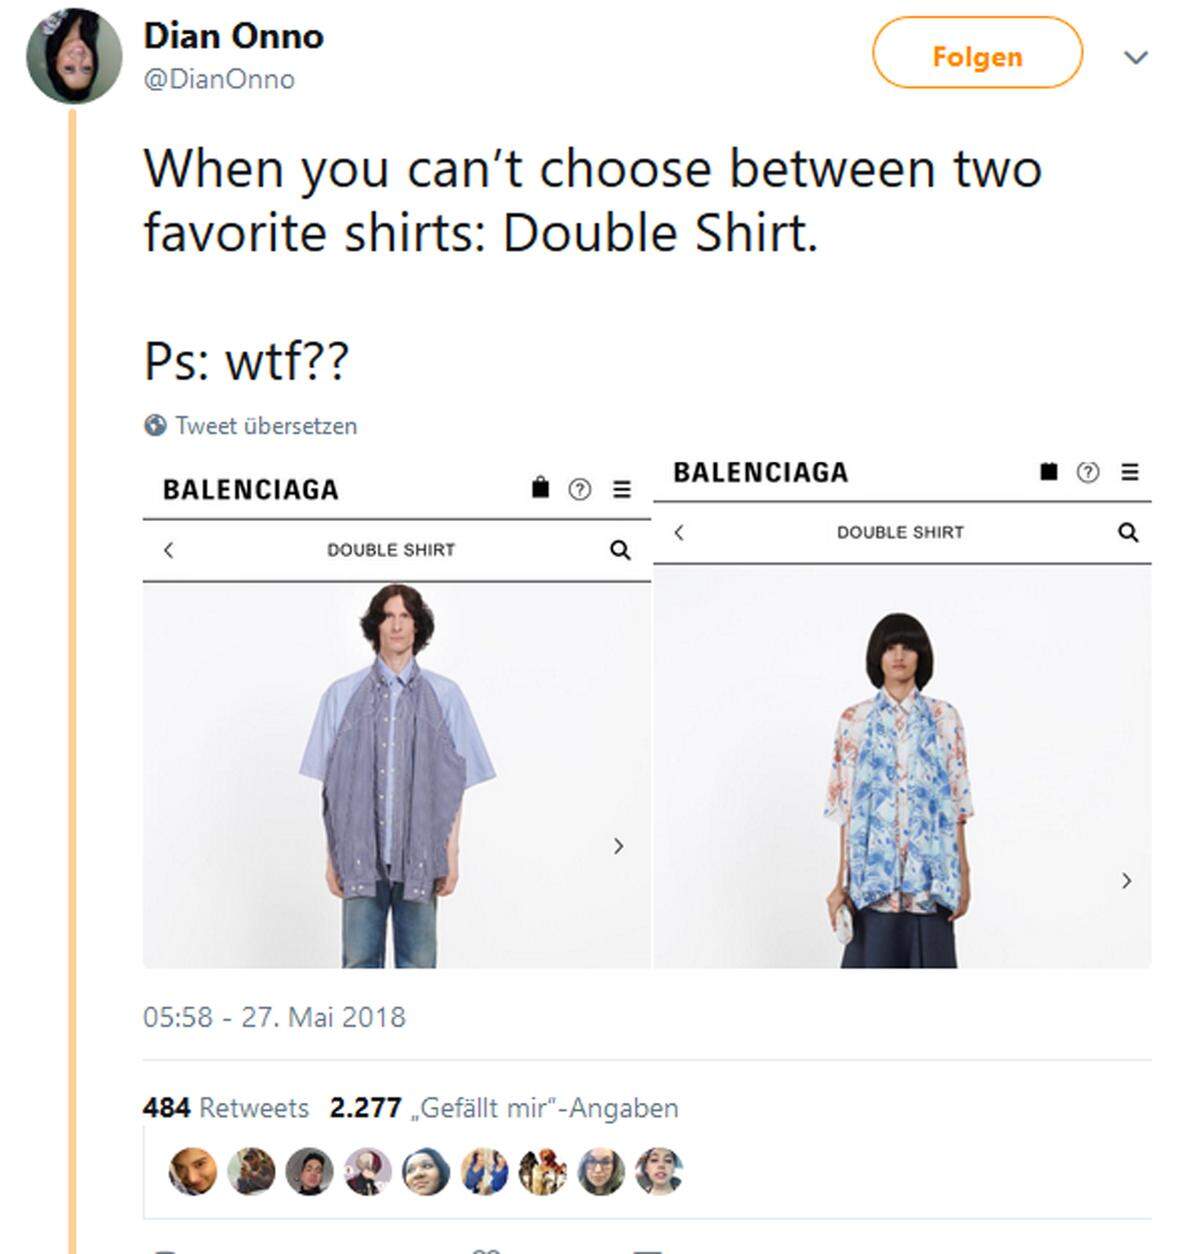 Im Web stößt der neue Trend jedoch mehr auf Unverständnis. "Wenn der Dresscode Smart Casual ist und du einfach mit deinem Hemd, das auf dein T-Shirt genäht wurde, erscheinst", lautet dazu etwa ein Kommentar. "Wenn du dich nicht zwischen deinen zwei Lieblingshemden entscheiden kannst: Doppel-Hemd", meint eine andere Userin.